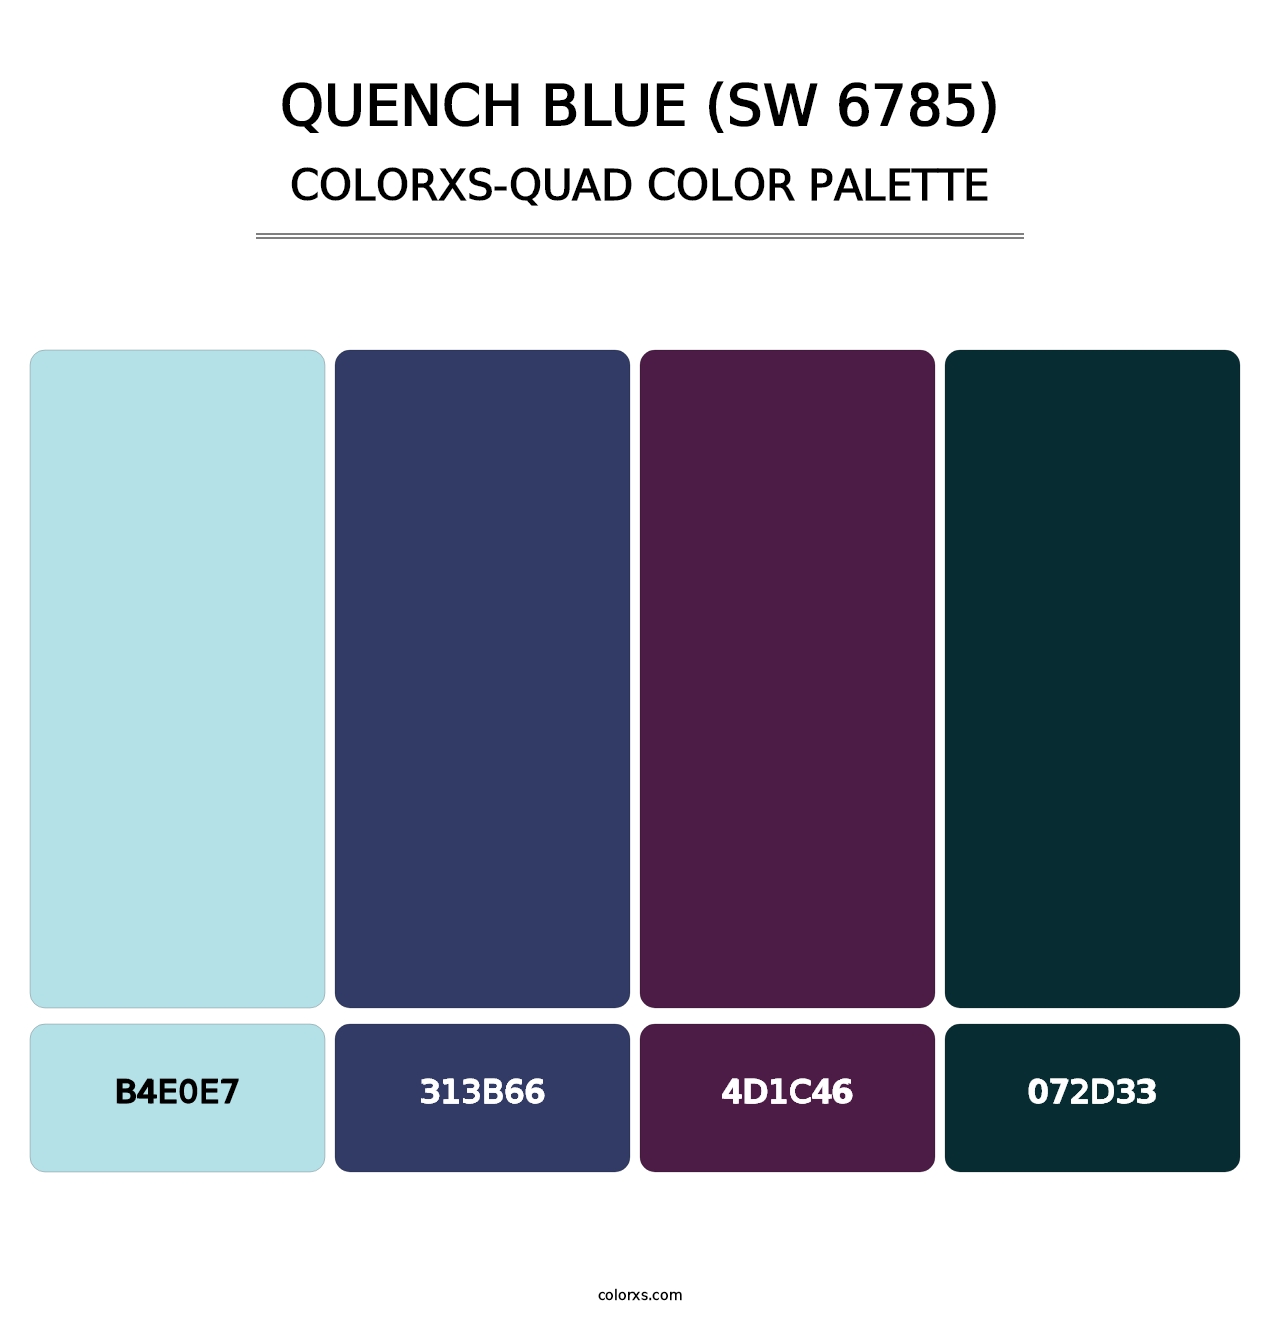 Quench Blue (SW 6785) - Colorxs Quad Palette